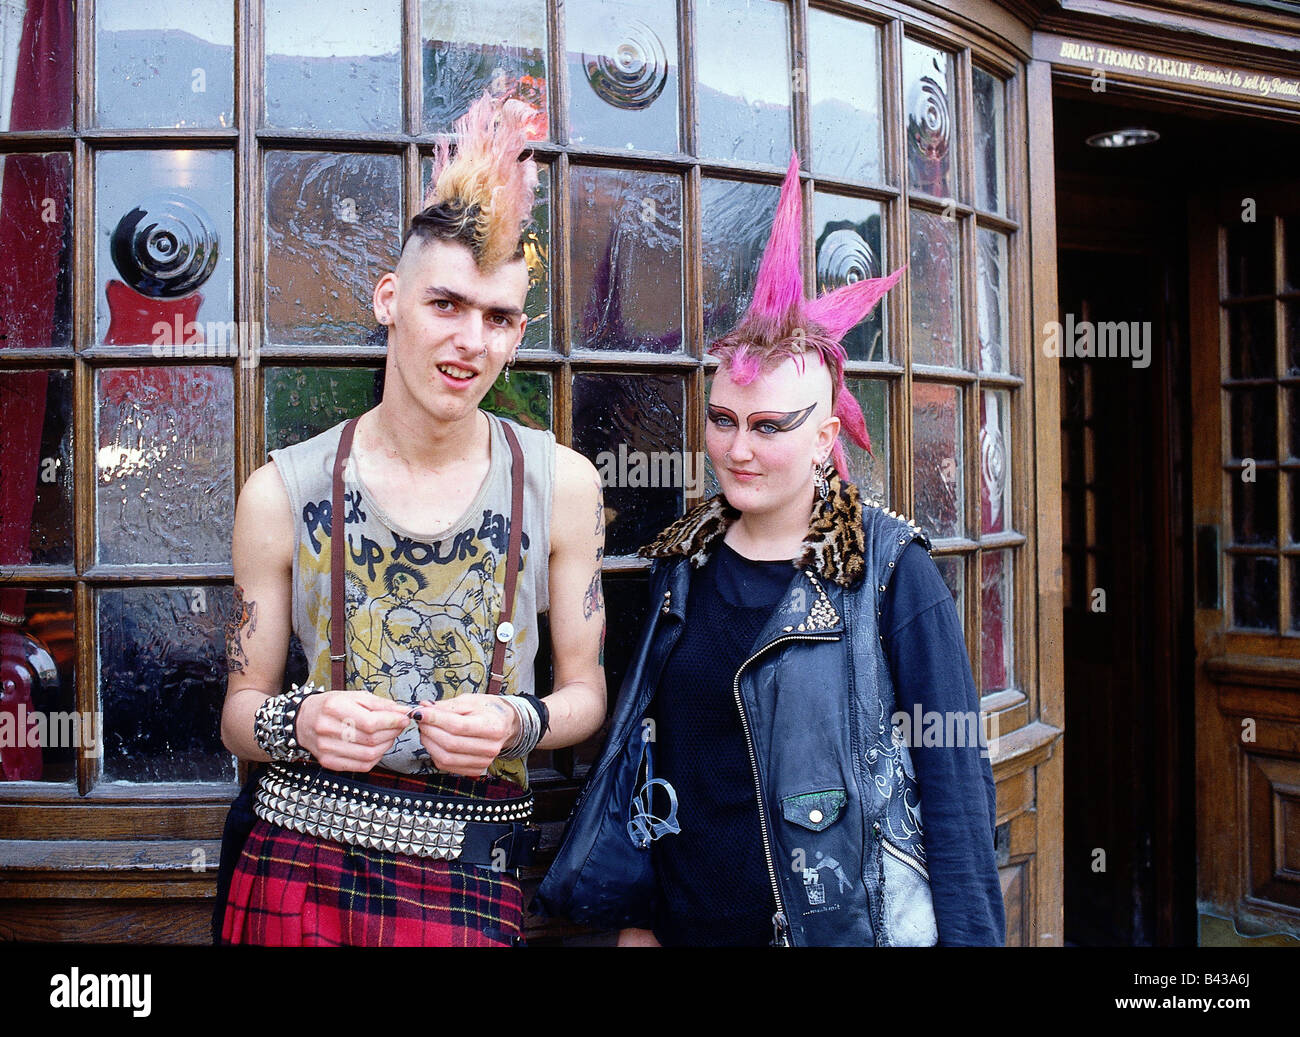 Punk Rock 1980s Fashion